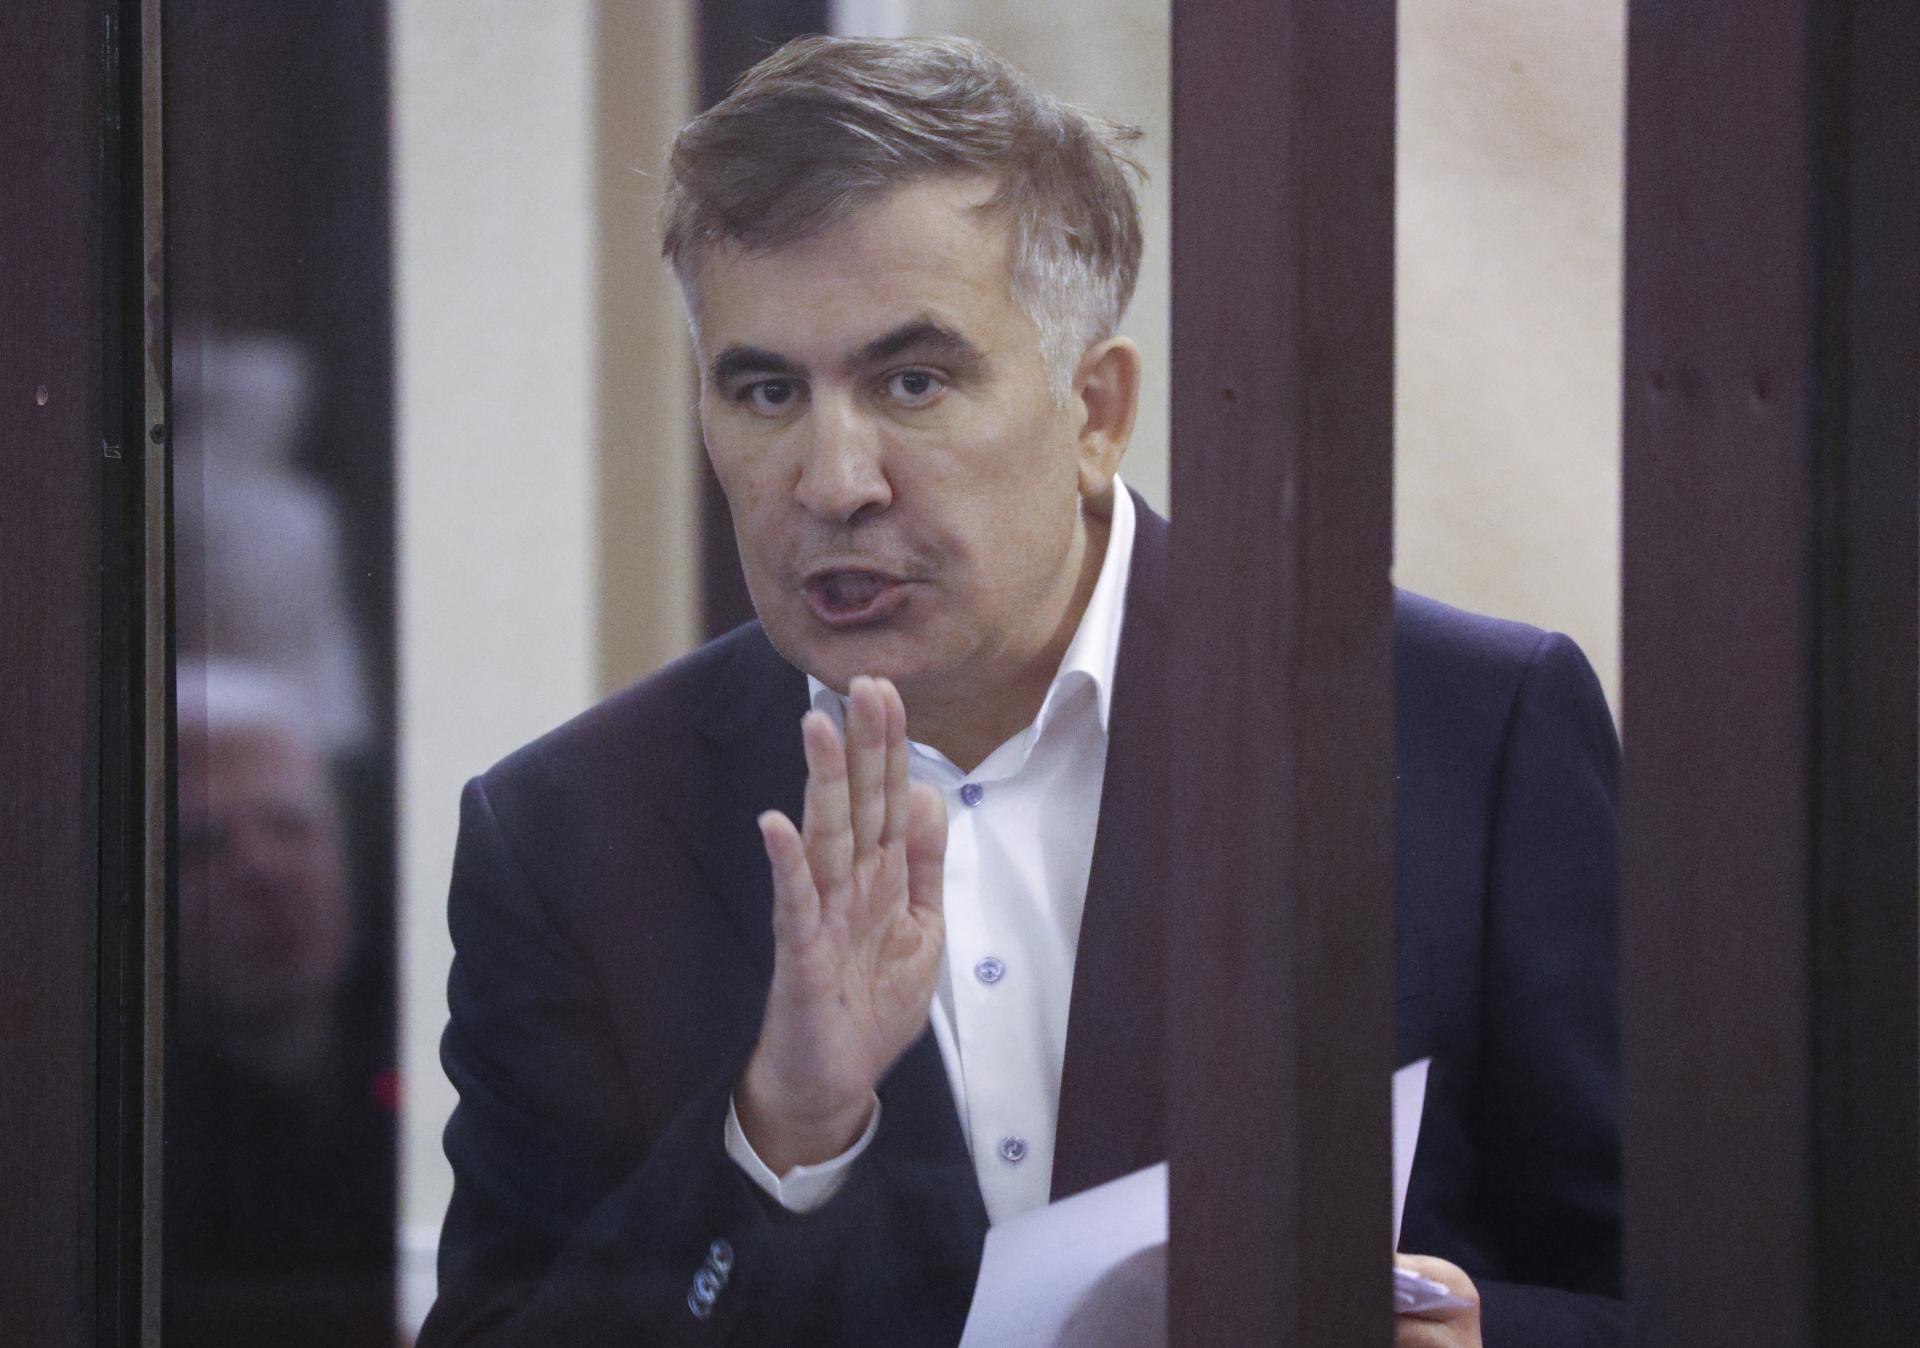 Zdravie väzneného Saakašviliho sa zhoršuje. Ukazuje to oddanosť európskym hodnotám, varuje Únia Gruzínsko